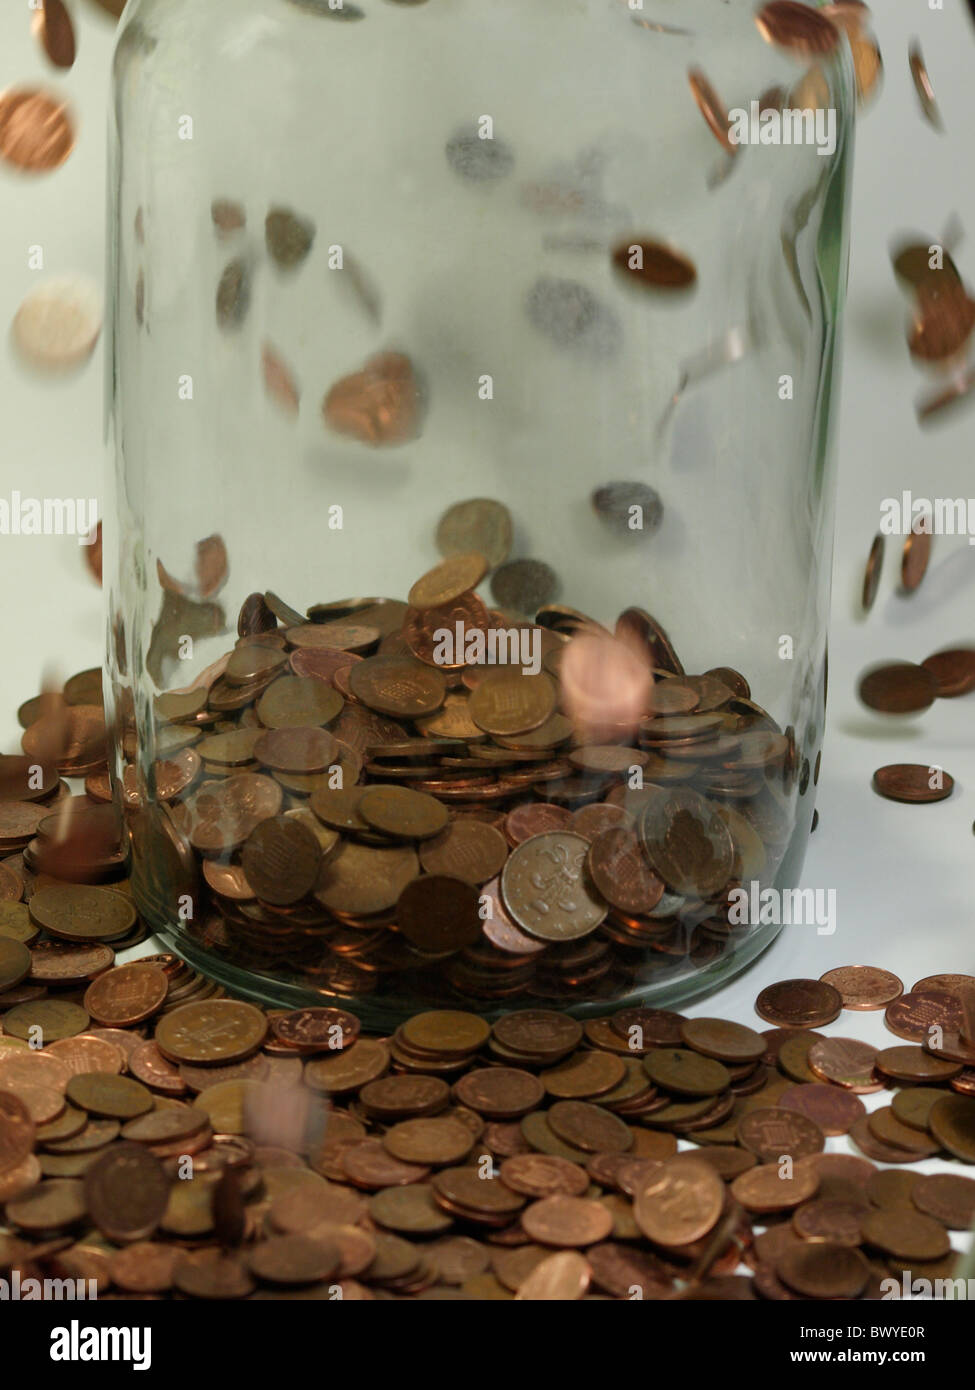 Putting pennies into a jar, UK Stock Photo